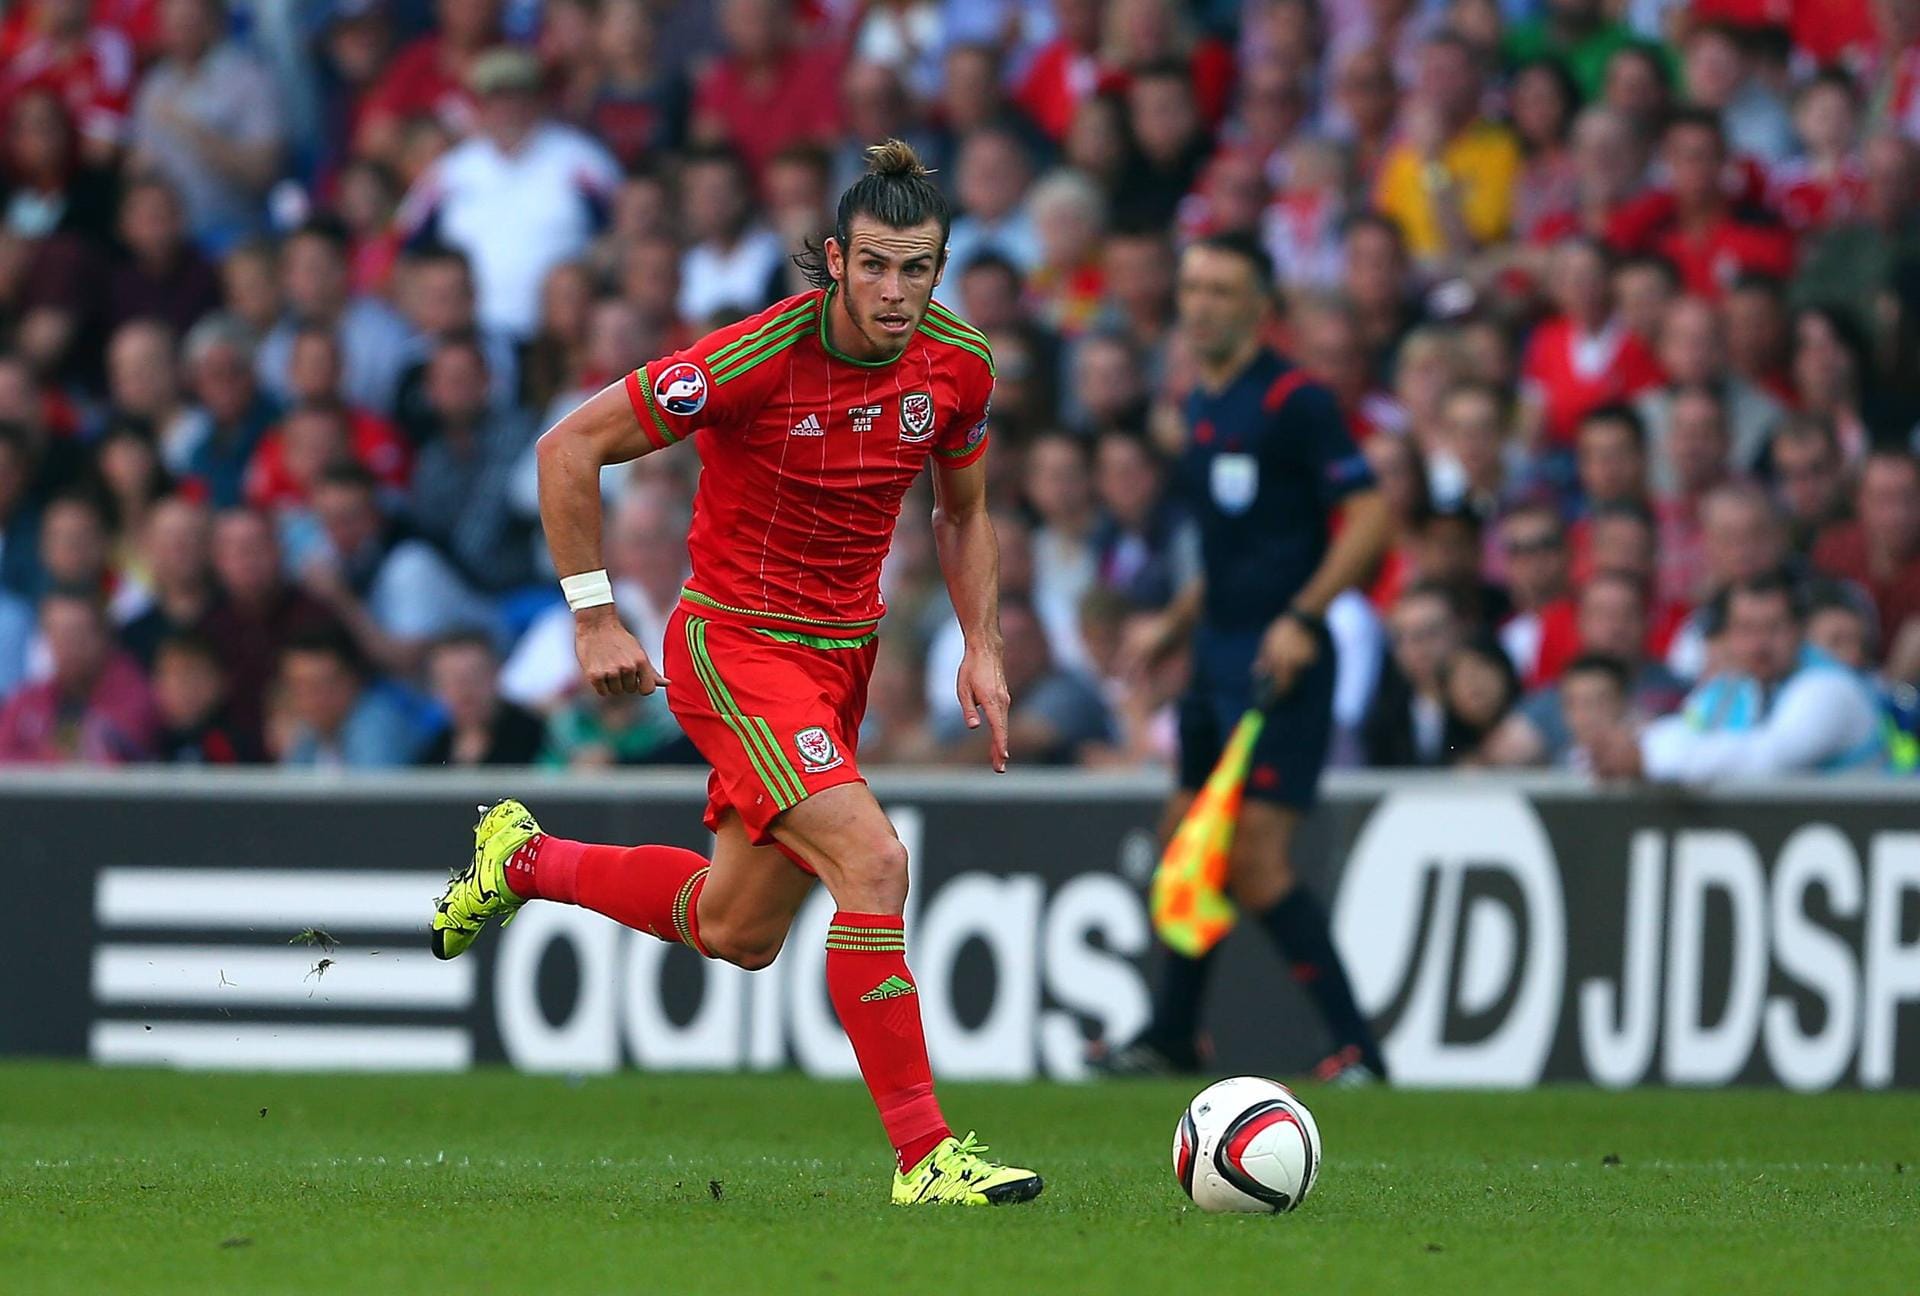 Gareth Bale gab schon mit 16 Jahren sein Debüt für Wales. Der 26-jährige Flügelflitzer von Real Madrid könnte mit seinen Fähigkeiten einer der Topstars eines solchen Turniers sein - wenn seine Nationalmannschaft nicht krasser Außenseiter wäre.